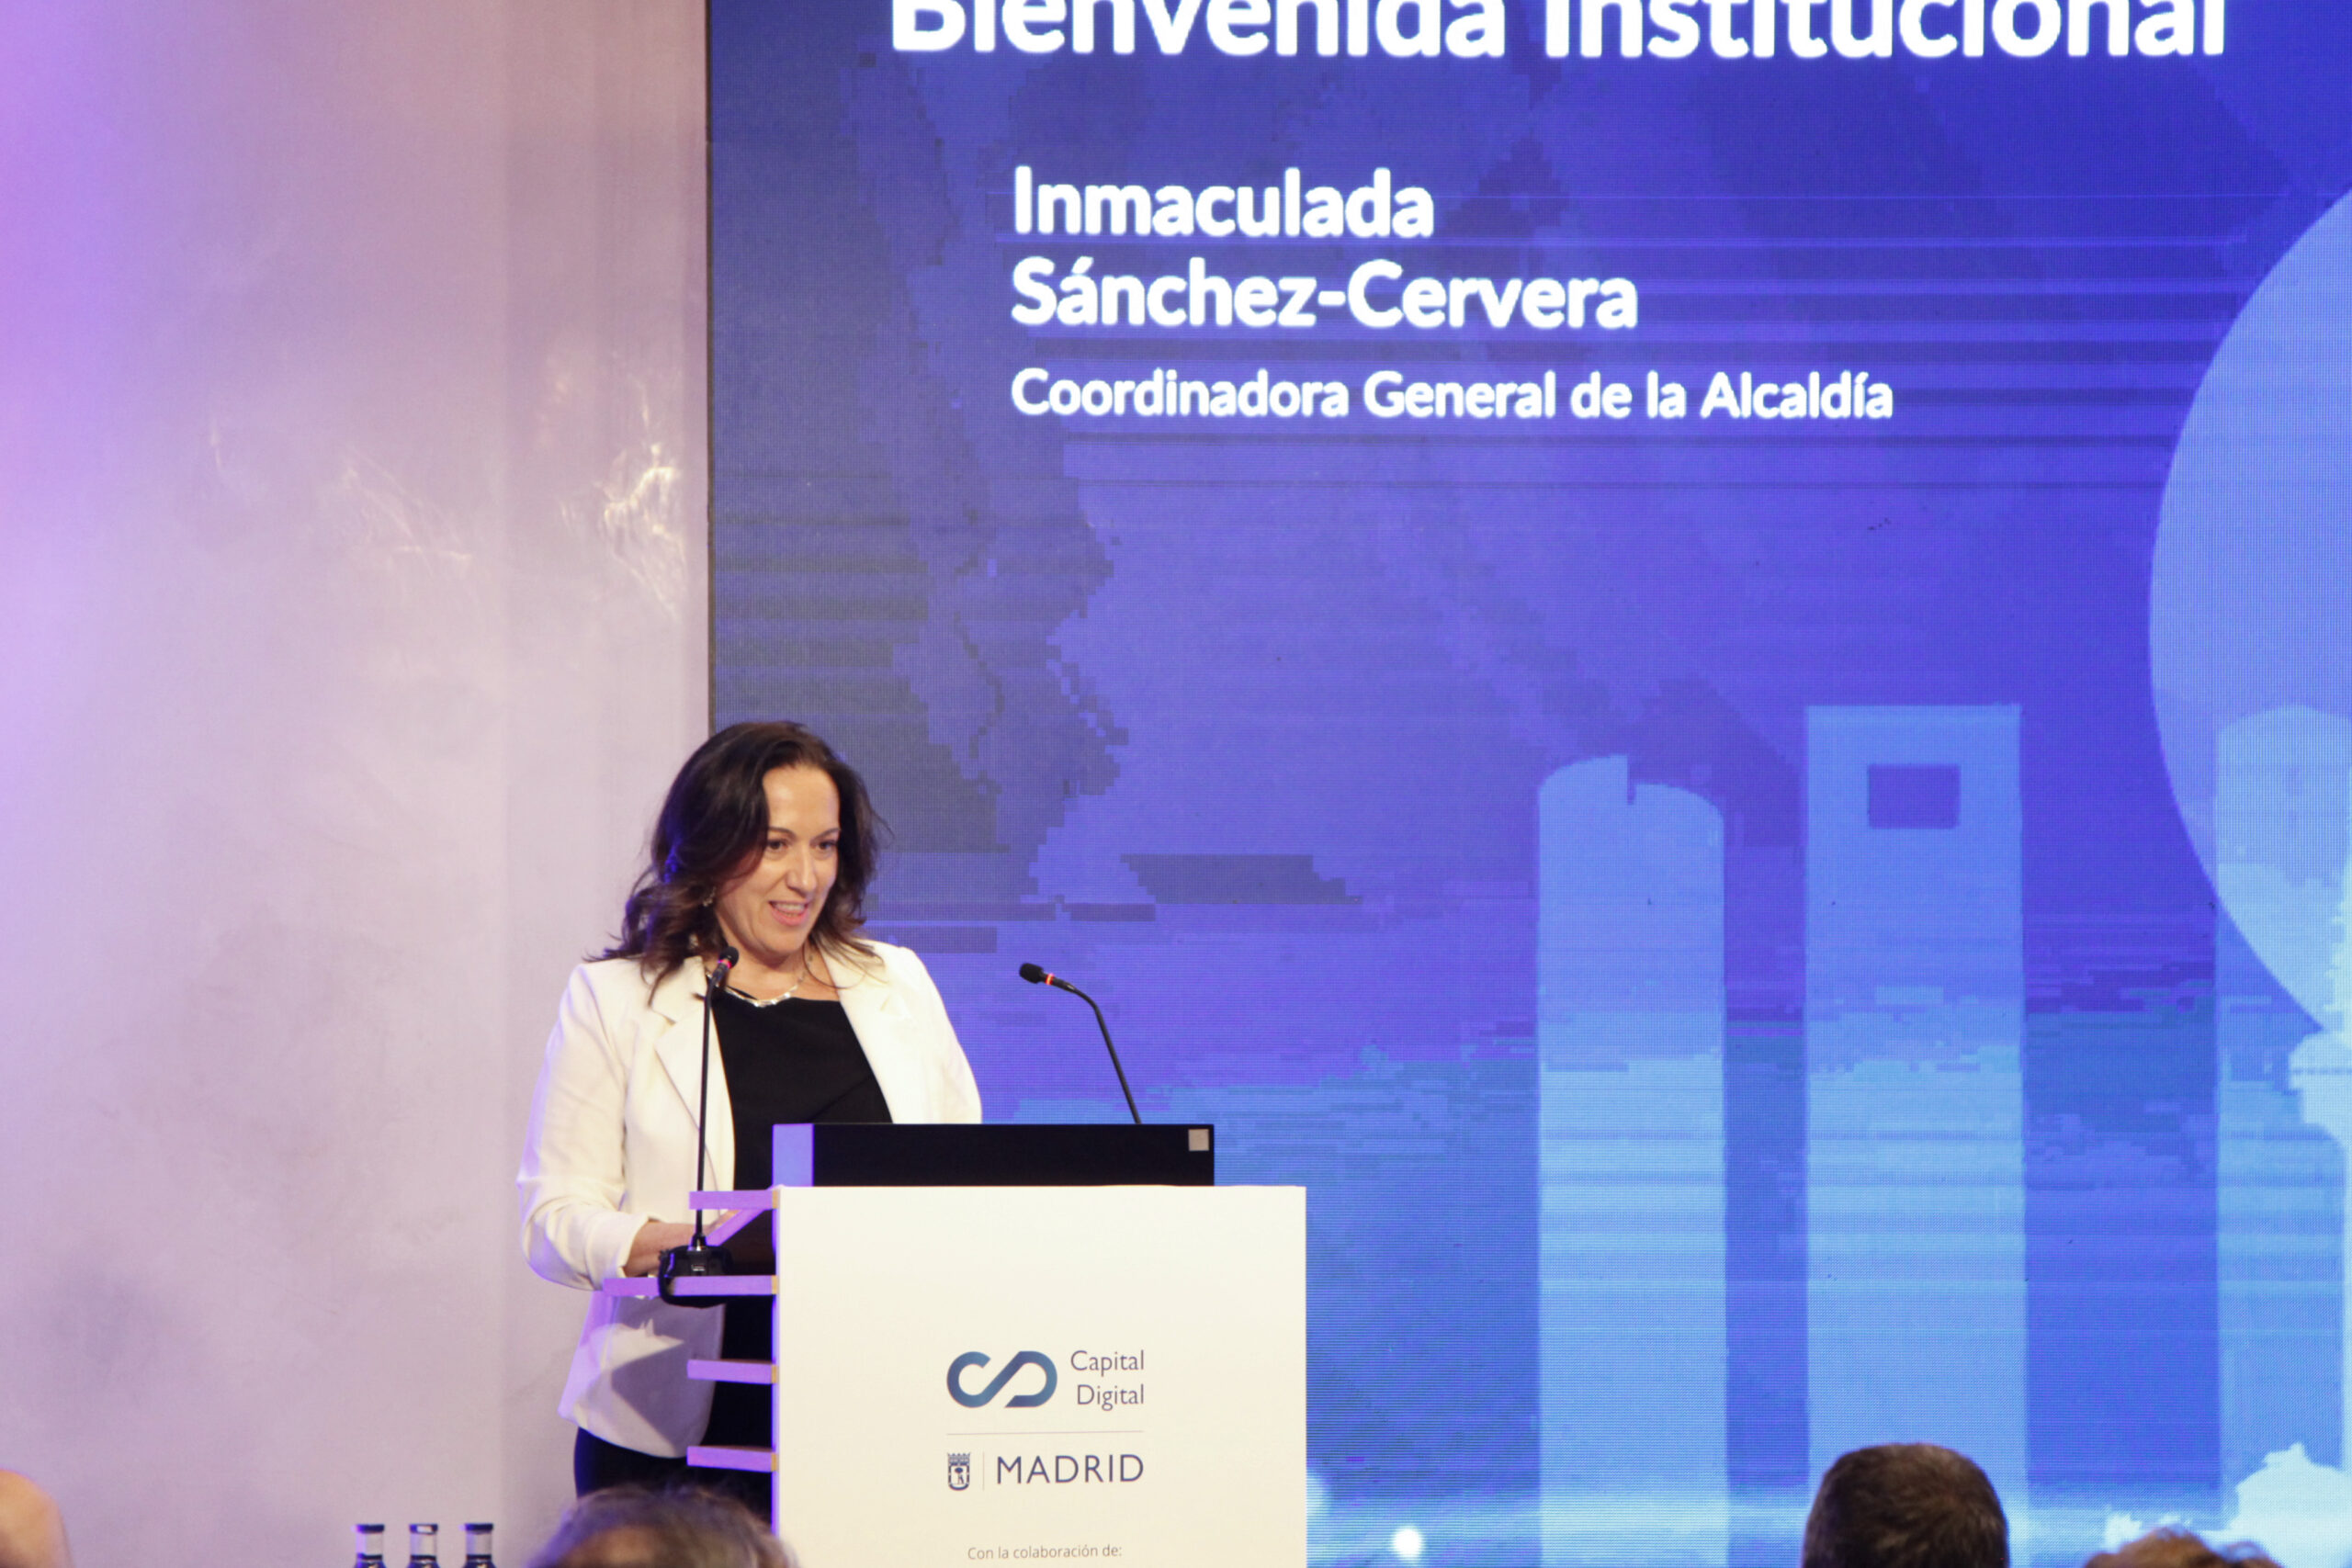 La coordinadora general de Alcaldía, Inmaculada Sánchez-Cervera.